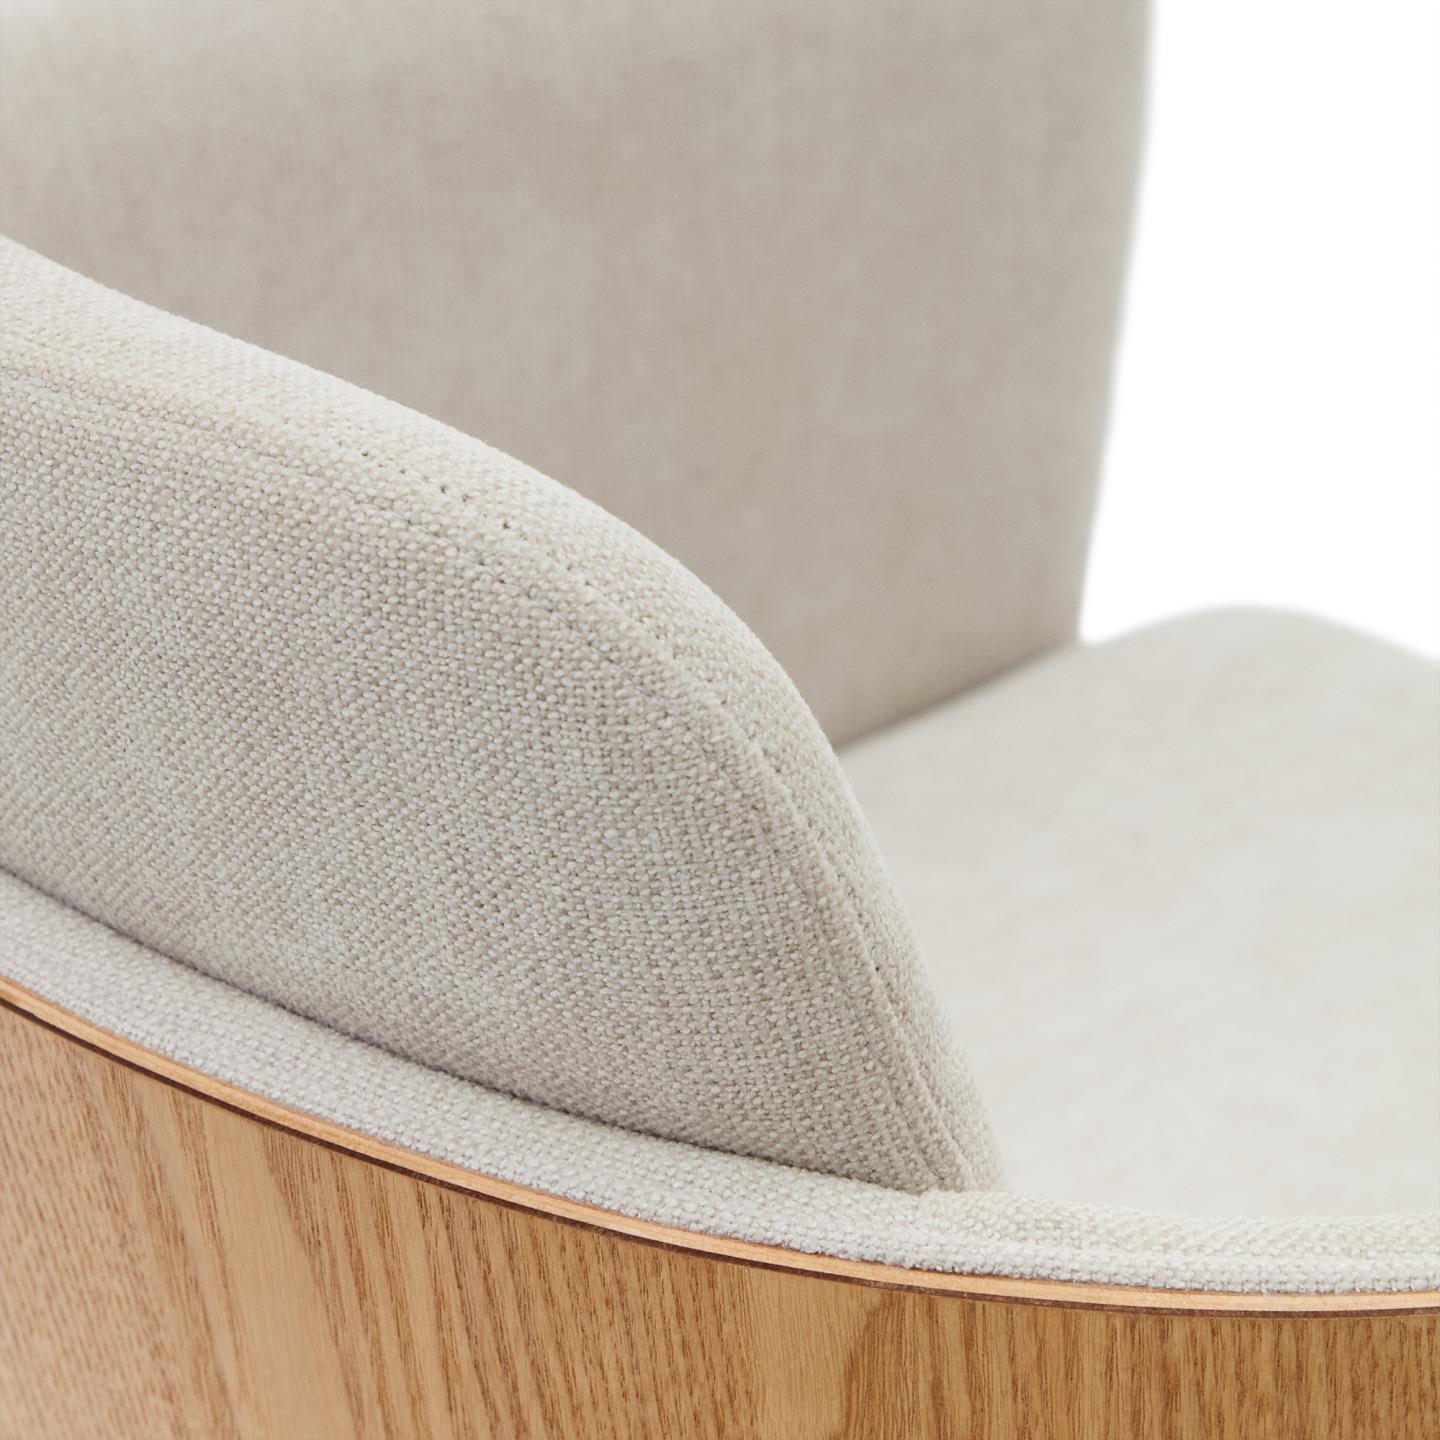 Krzesło biurowe MADAI beżowy szenil La Forma    Eye on Design